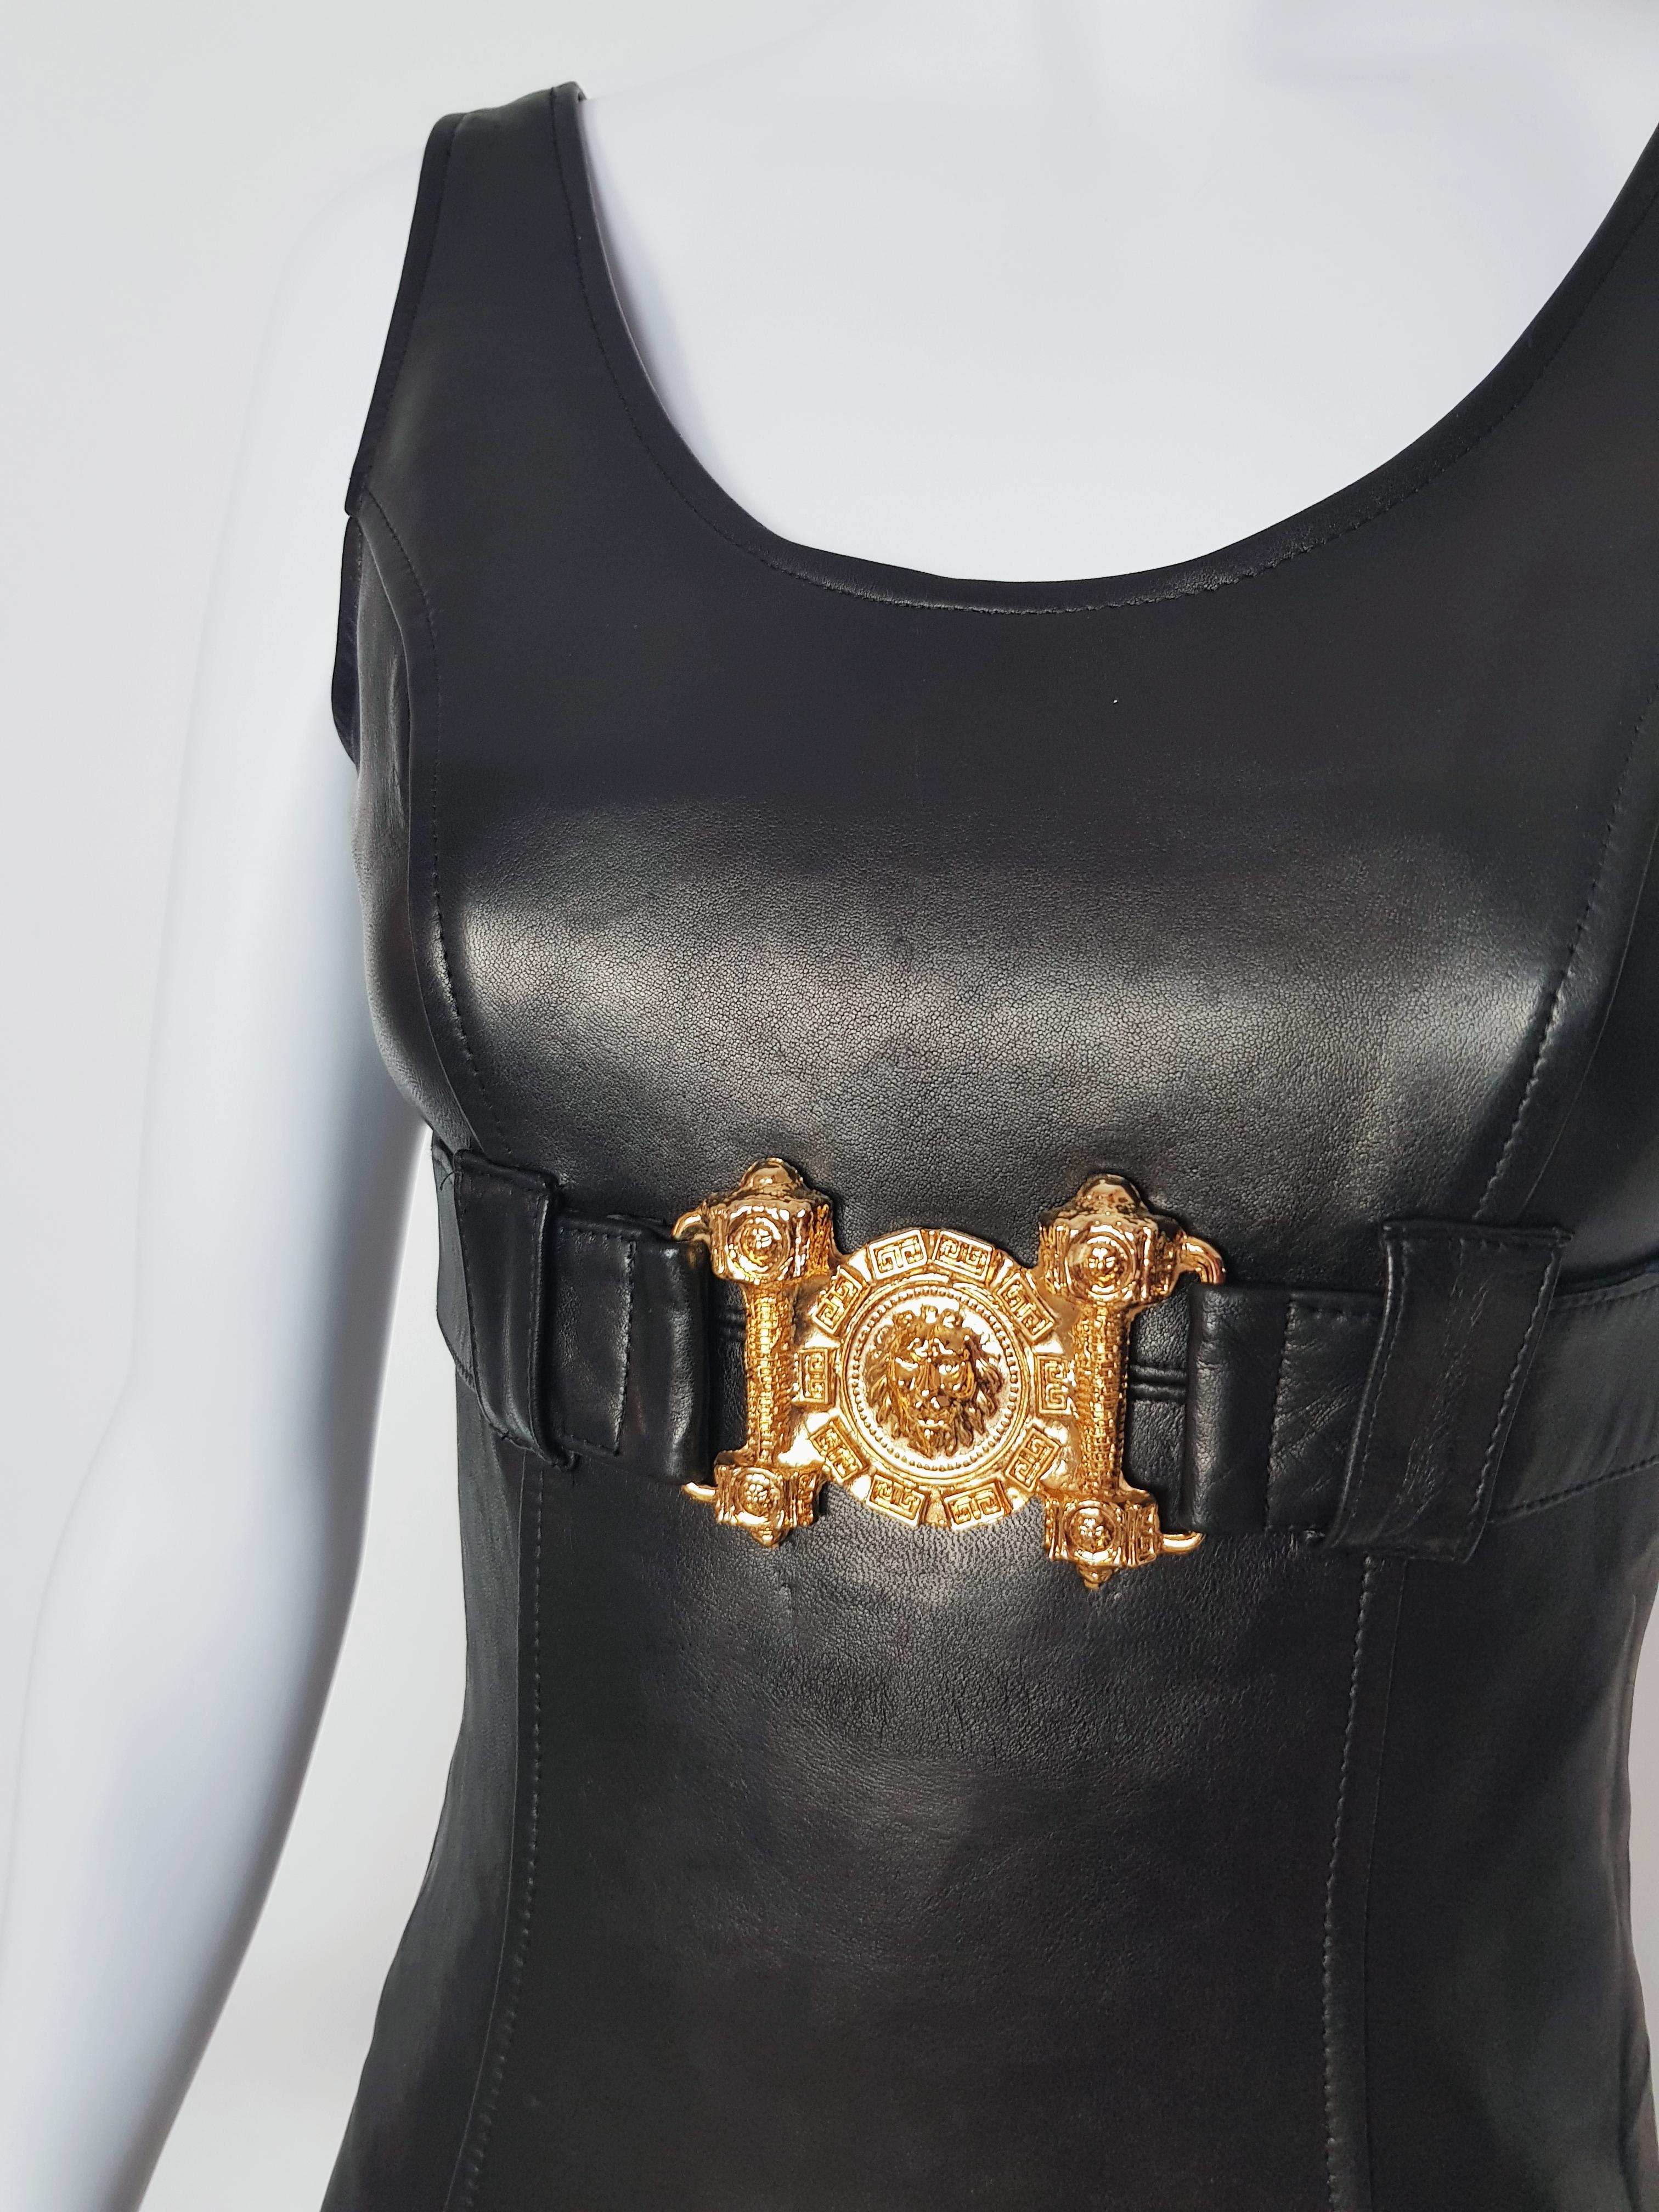 Dieses Vintage-Kleid von Alberto Bini stammt direkt aus den 90er Jahren und ist gleichzeitig eine schöne Ode an das Versace-Universum.

-Löwe Detail in Metall Goldton
-Vorderes Leder
-Rückseite Strickstoff sehr dehnbar
-Gefüttert im